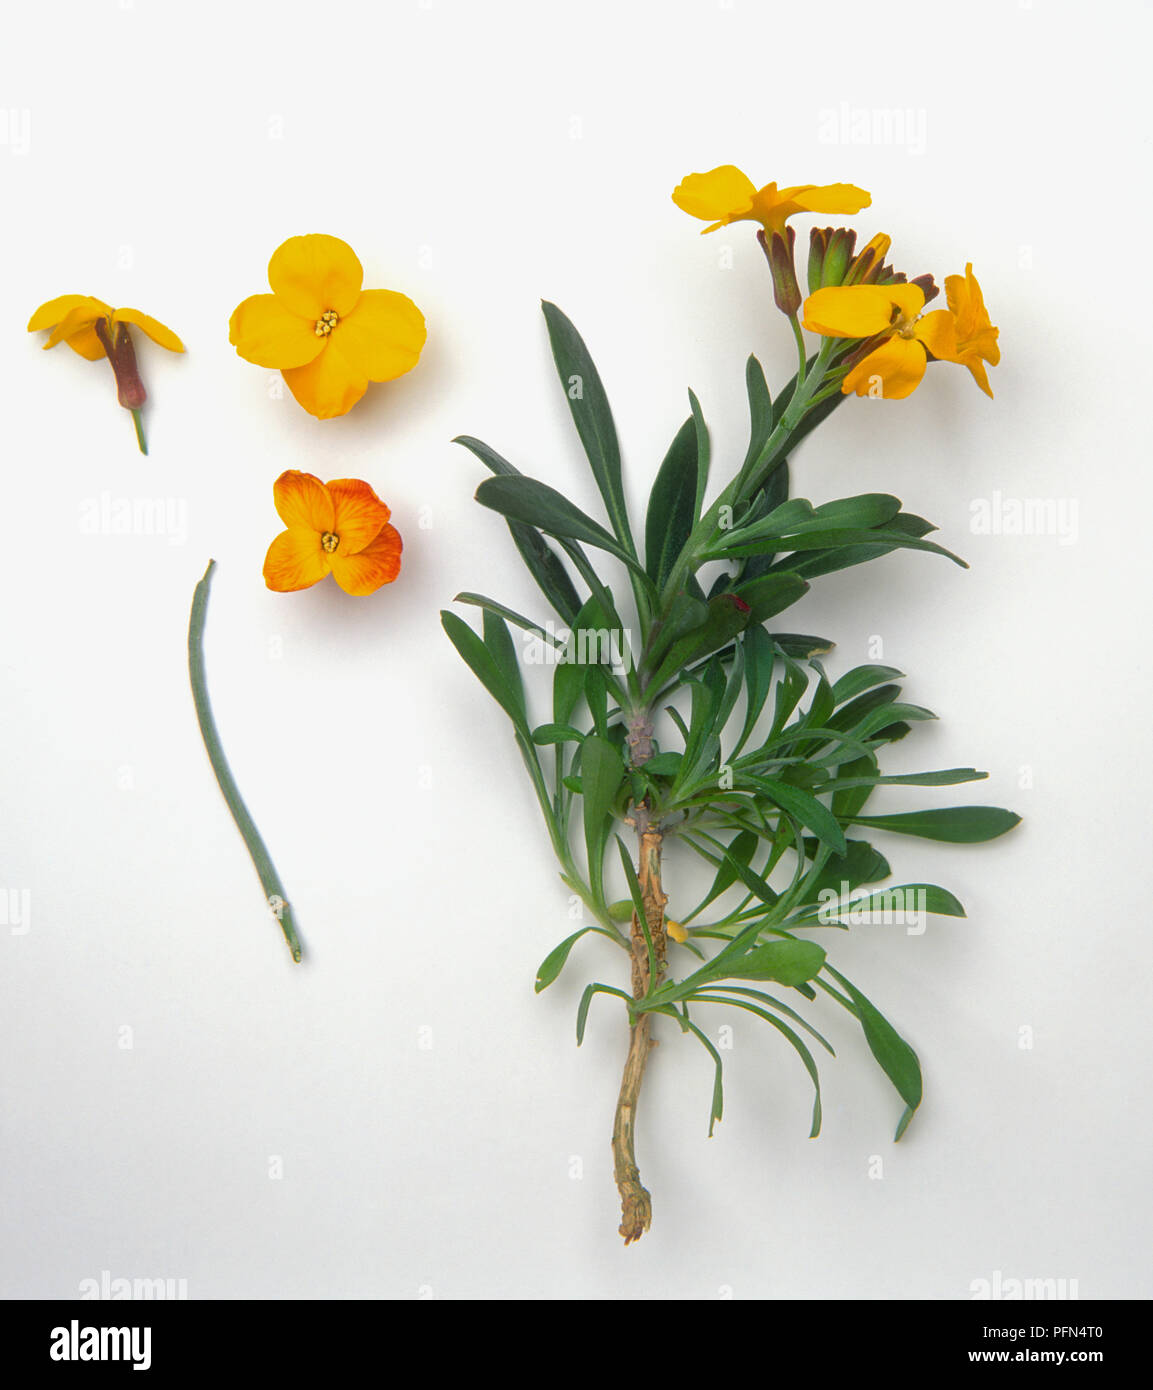 Erysimum cheiri (Aegean wallflower), yellow flowers and green leaves Stock Photo